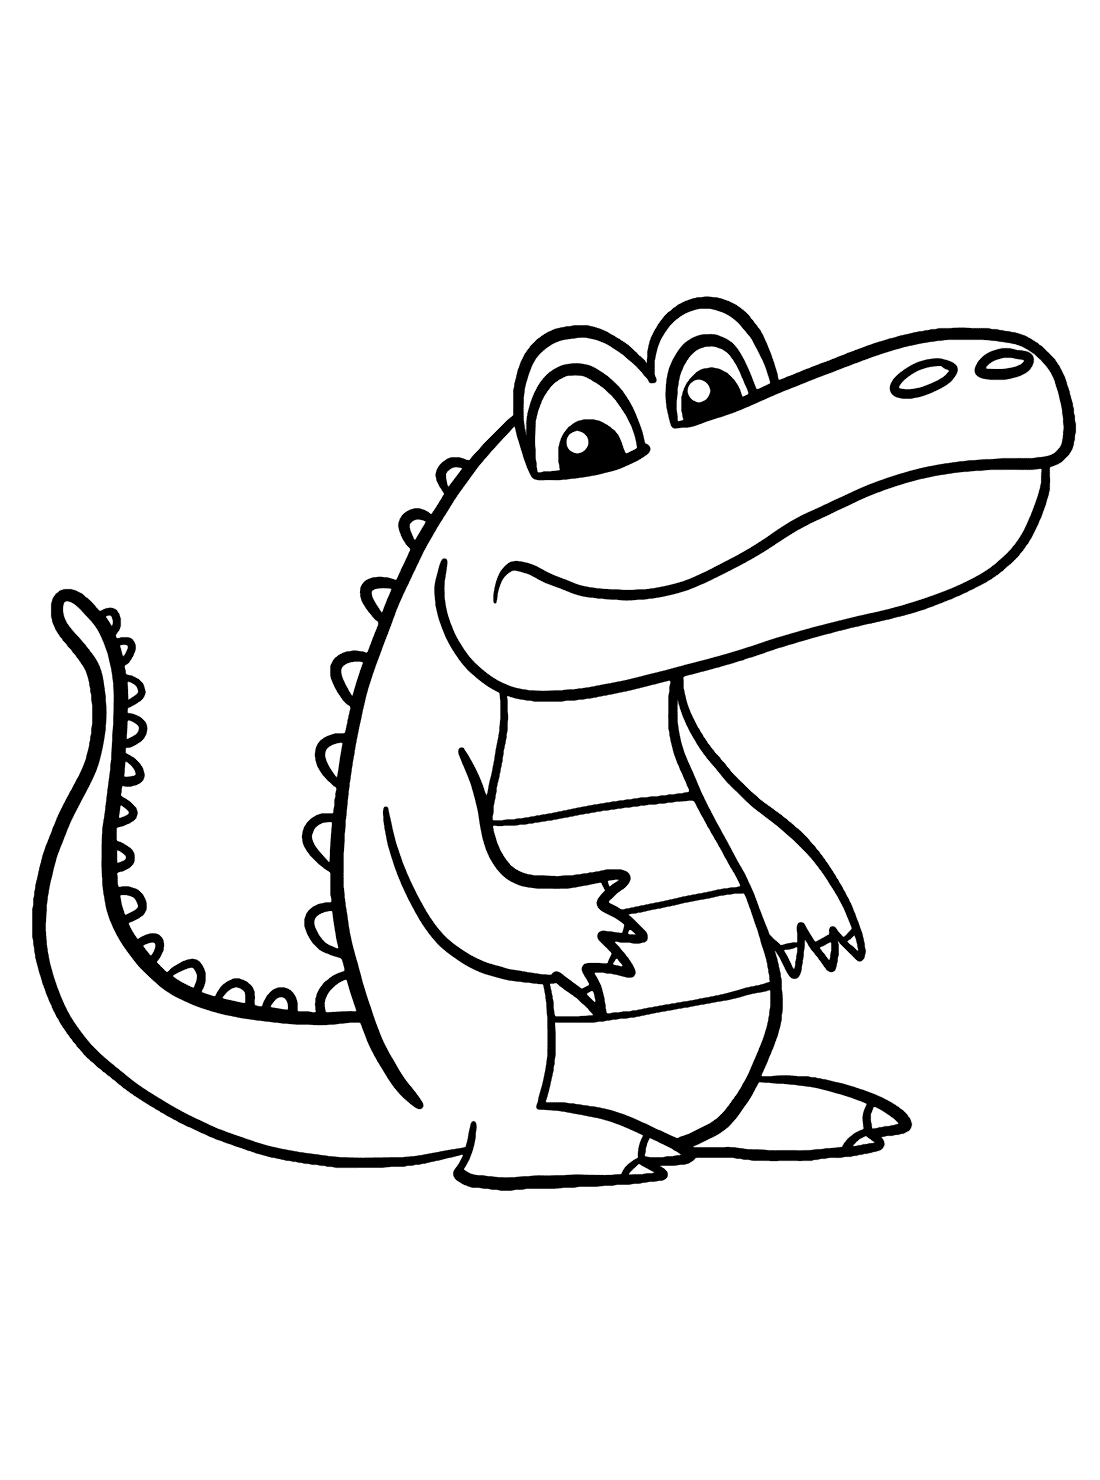 Alligators art coloring pages